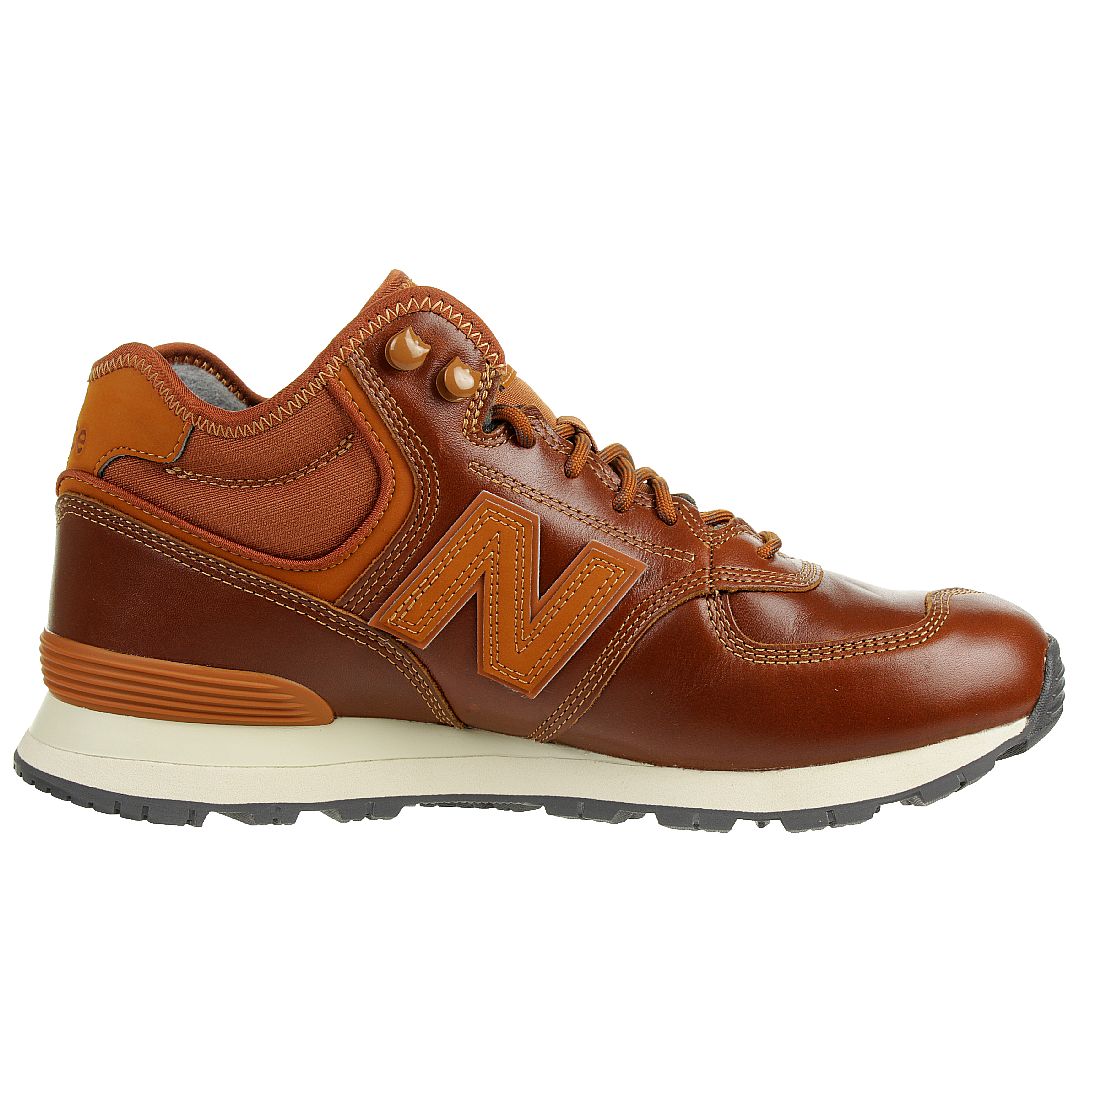 New Balance MH 574 OAD Classic Sneaker Winter Schuhe gefüttert